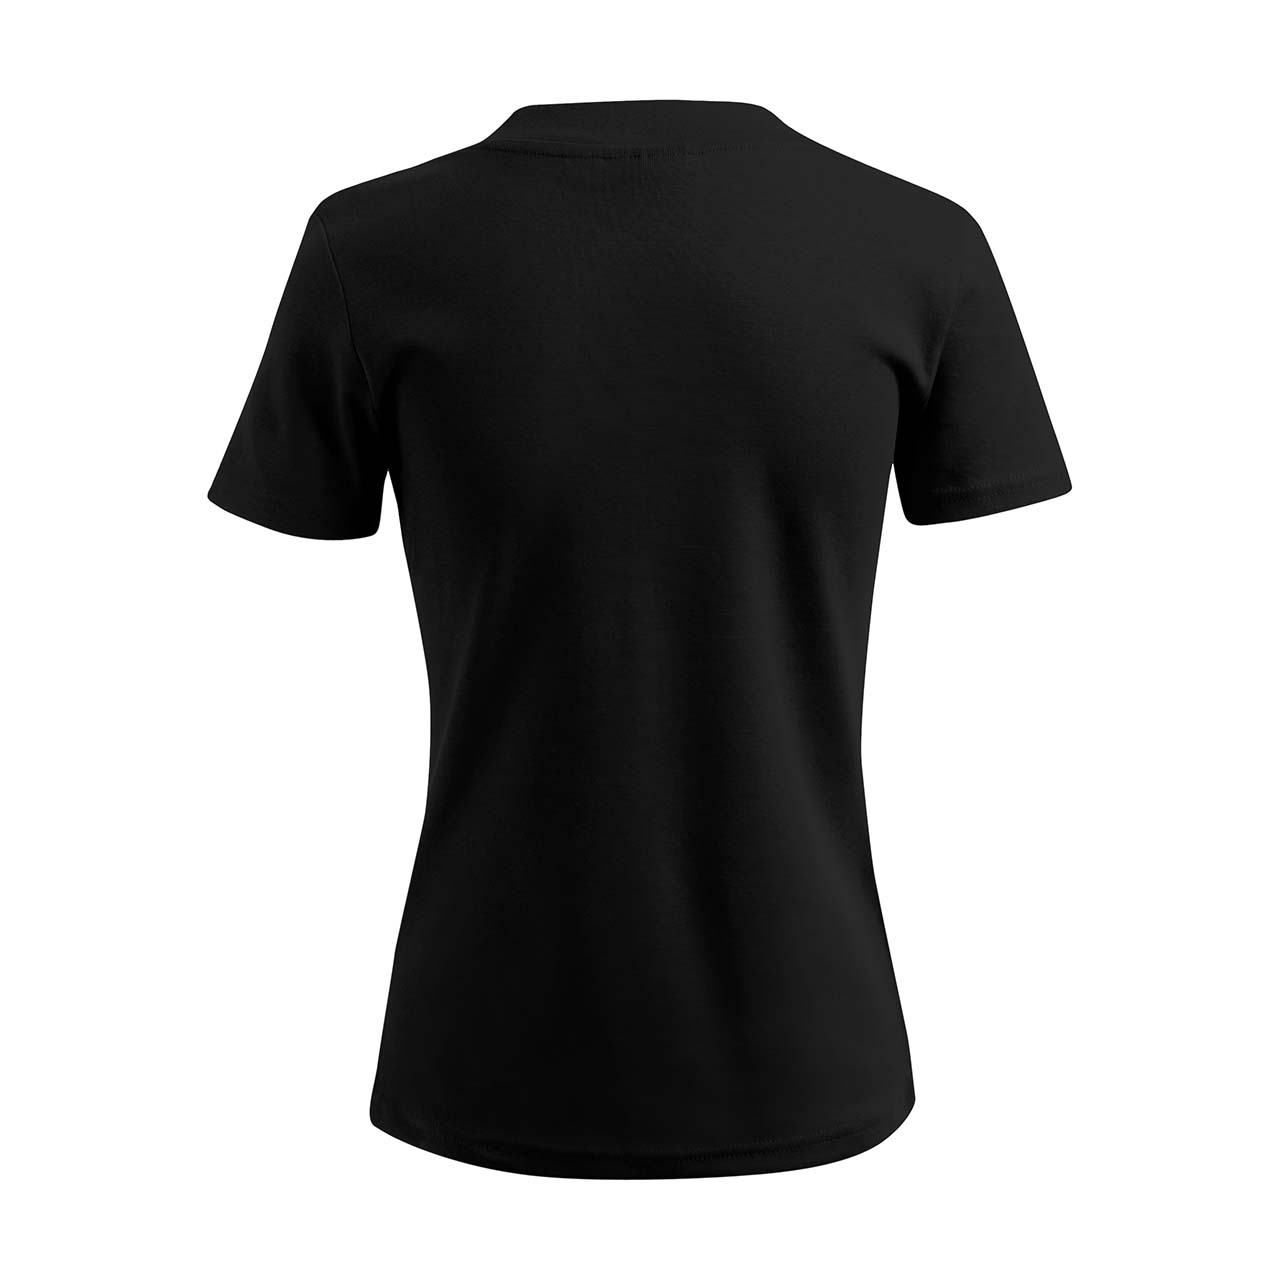 Damen T-Shirt mit V-Ausschnitt - Kölsche Musik - Strass